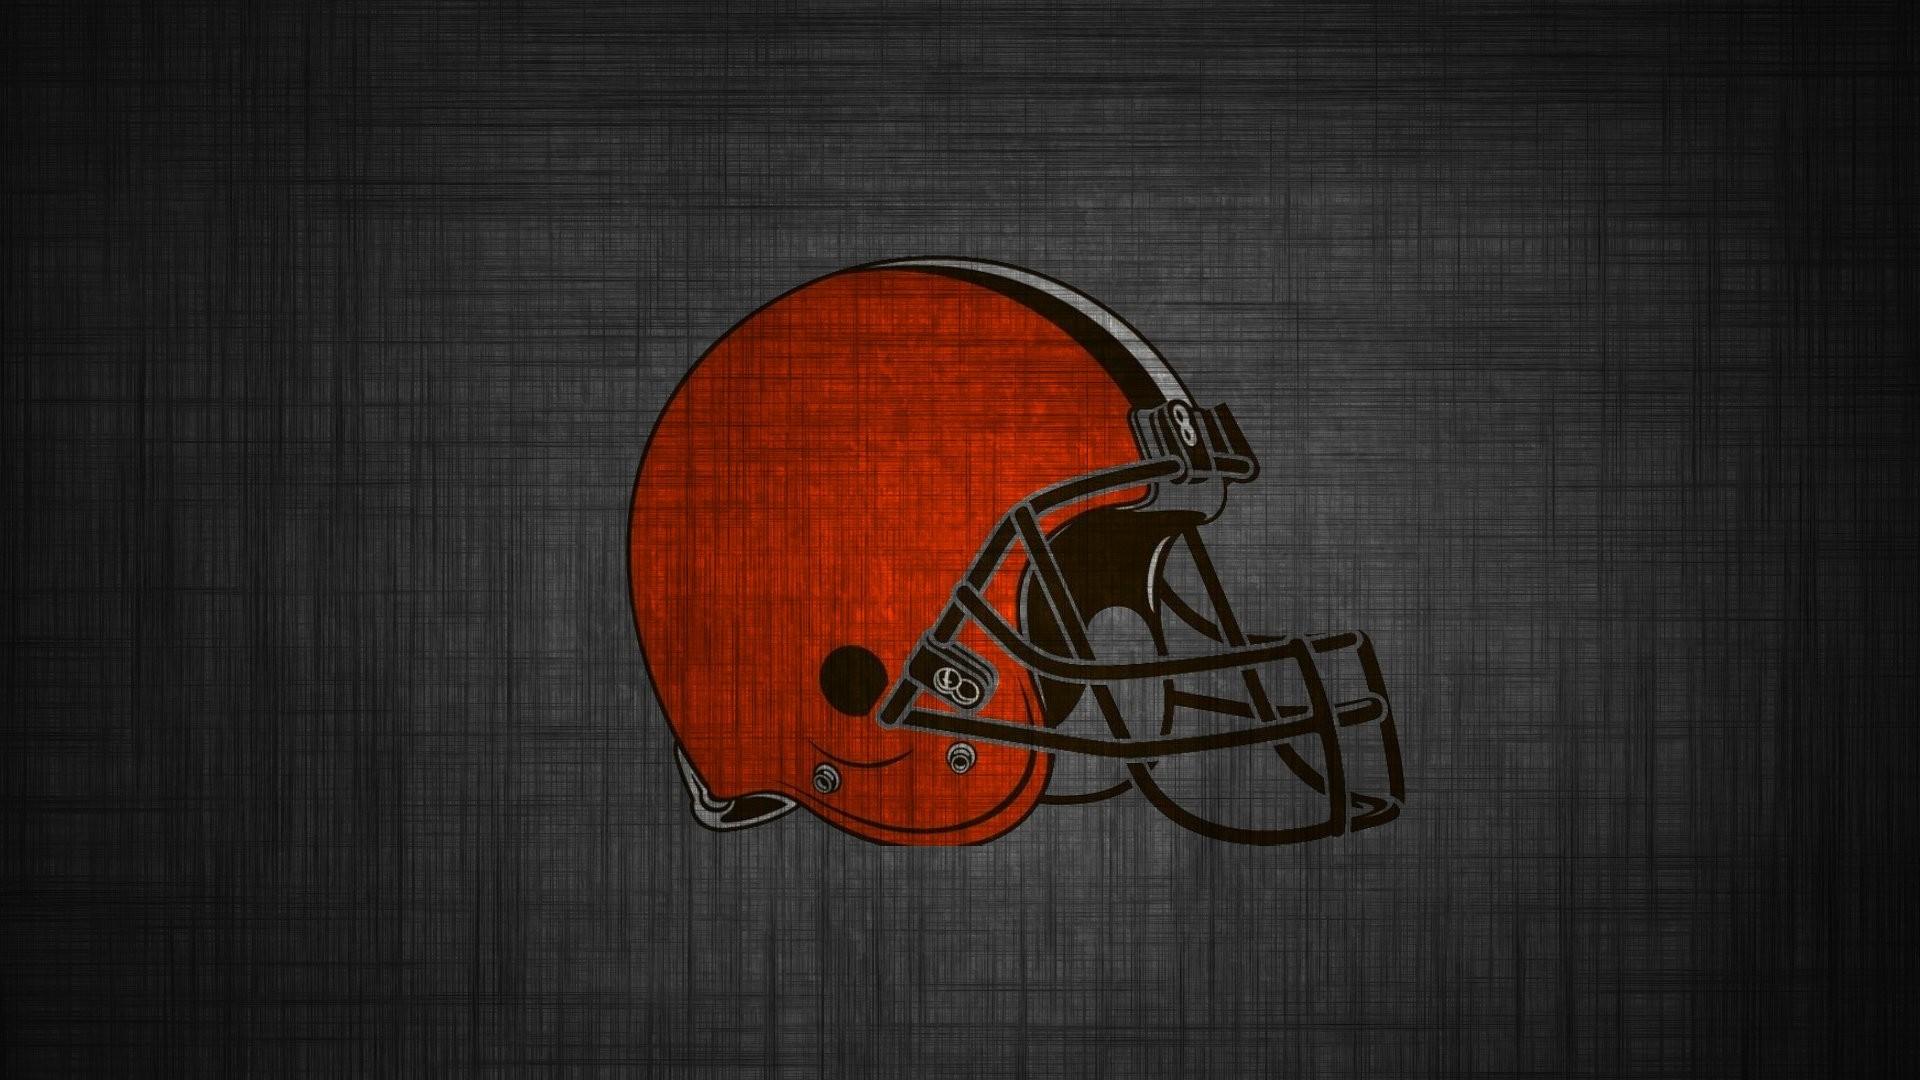 Wallpaper Cleveland Browns NFL Football Wallpaper